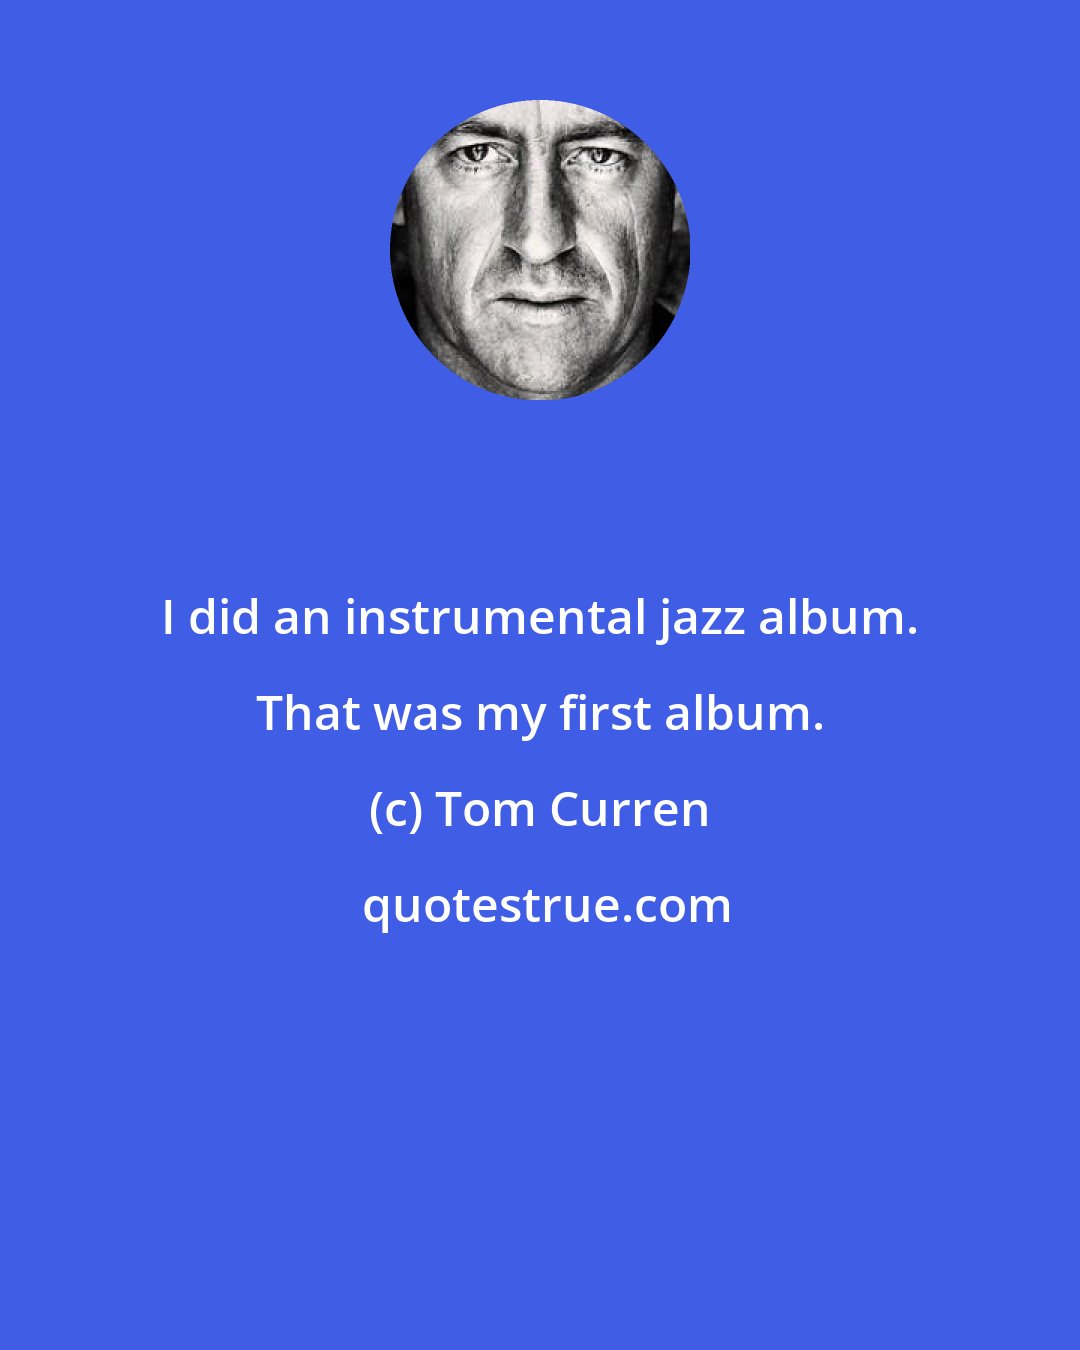 Tom Curren: I did an instrumental jazz album. That was my first album.